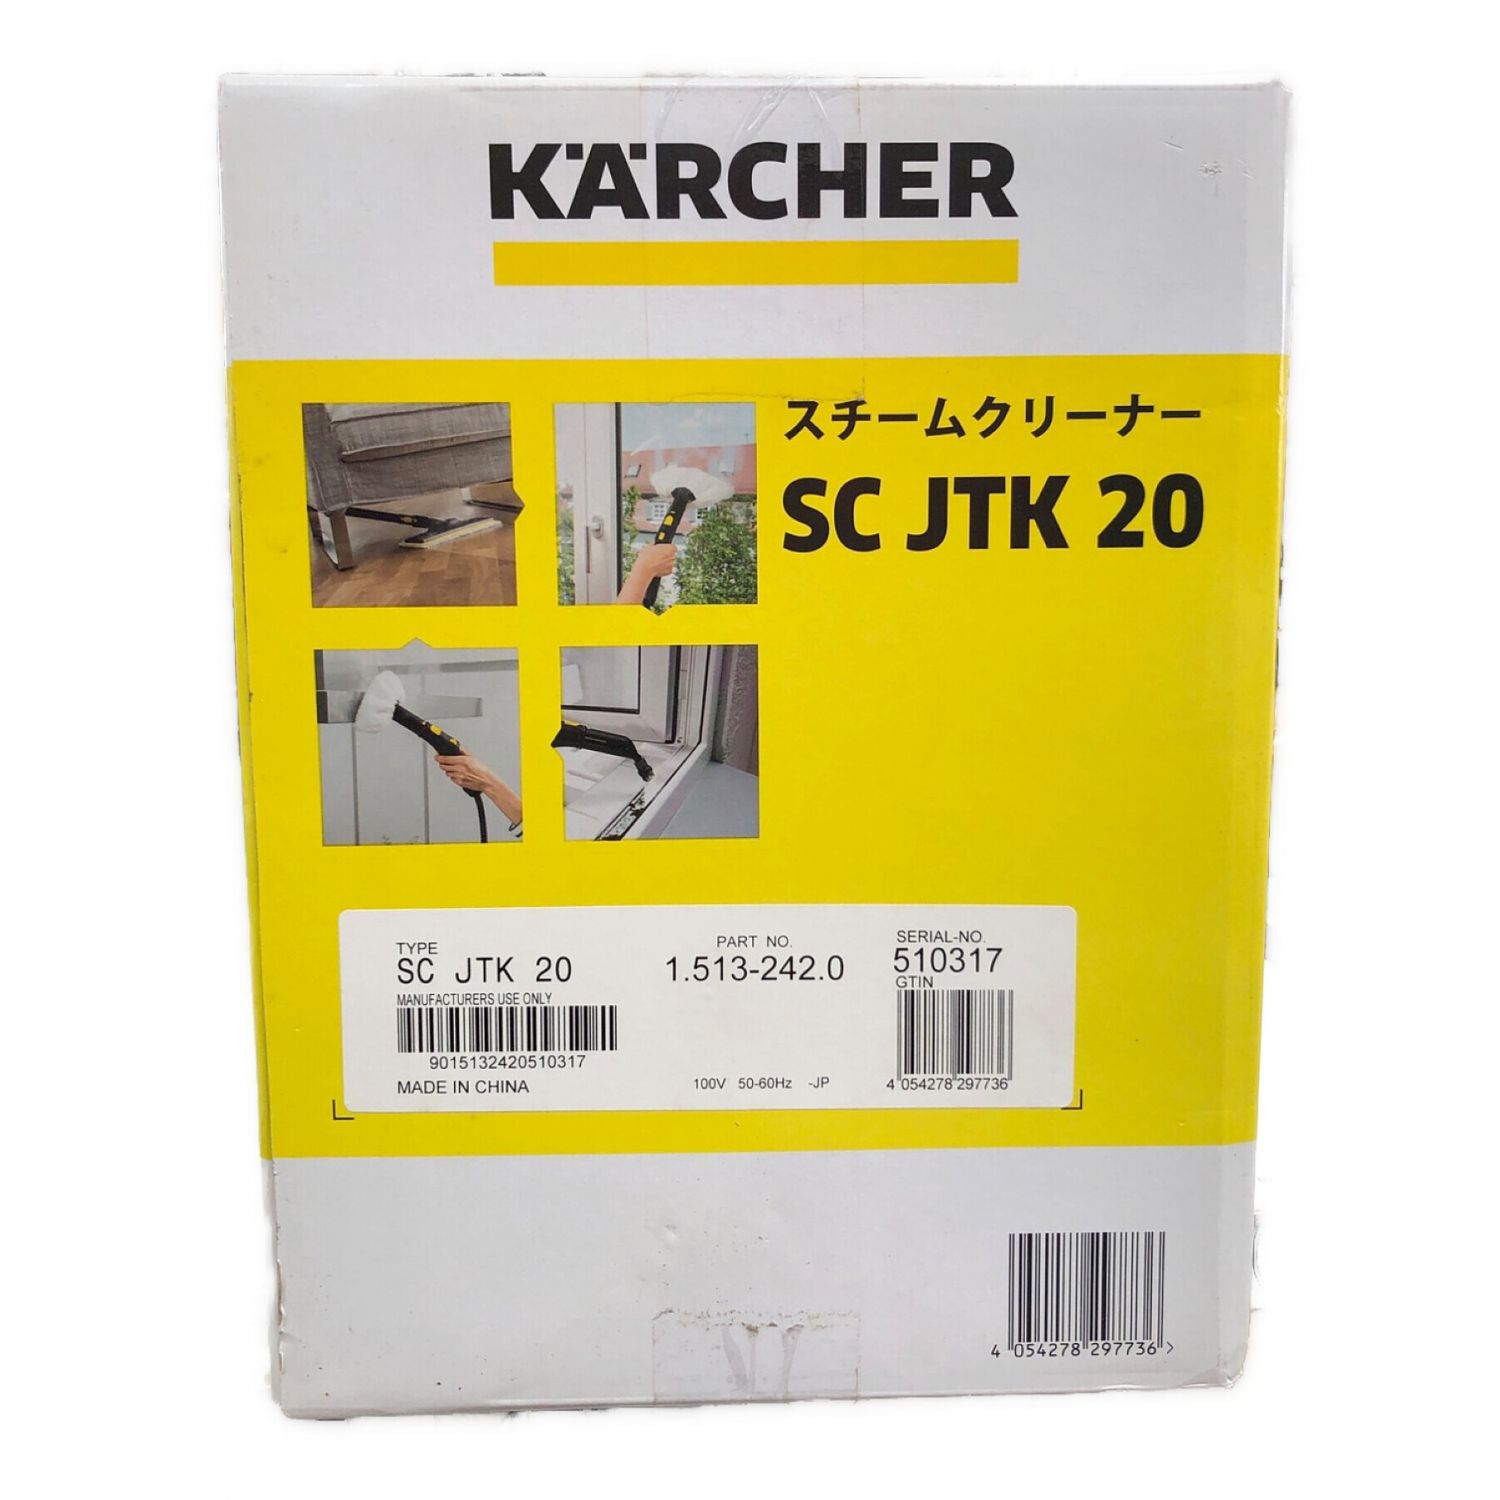 【良品】ケルヒャー スチームクリーナーSC JTK 20 /50-60Hz